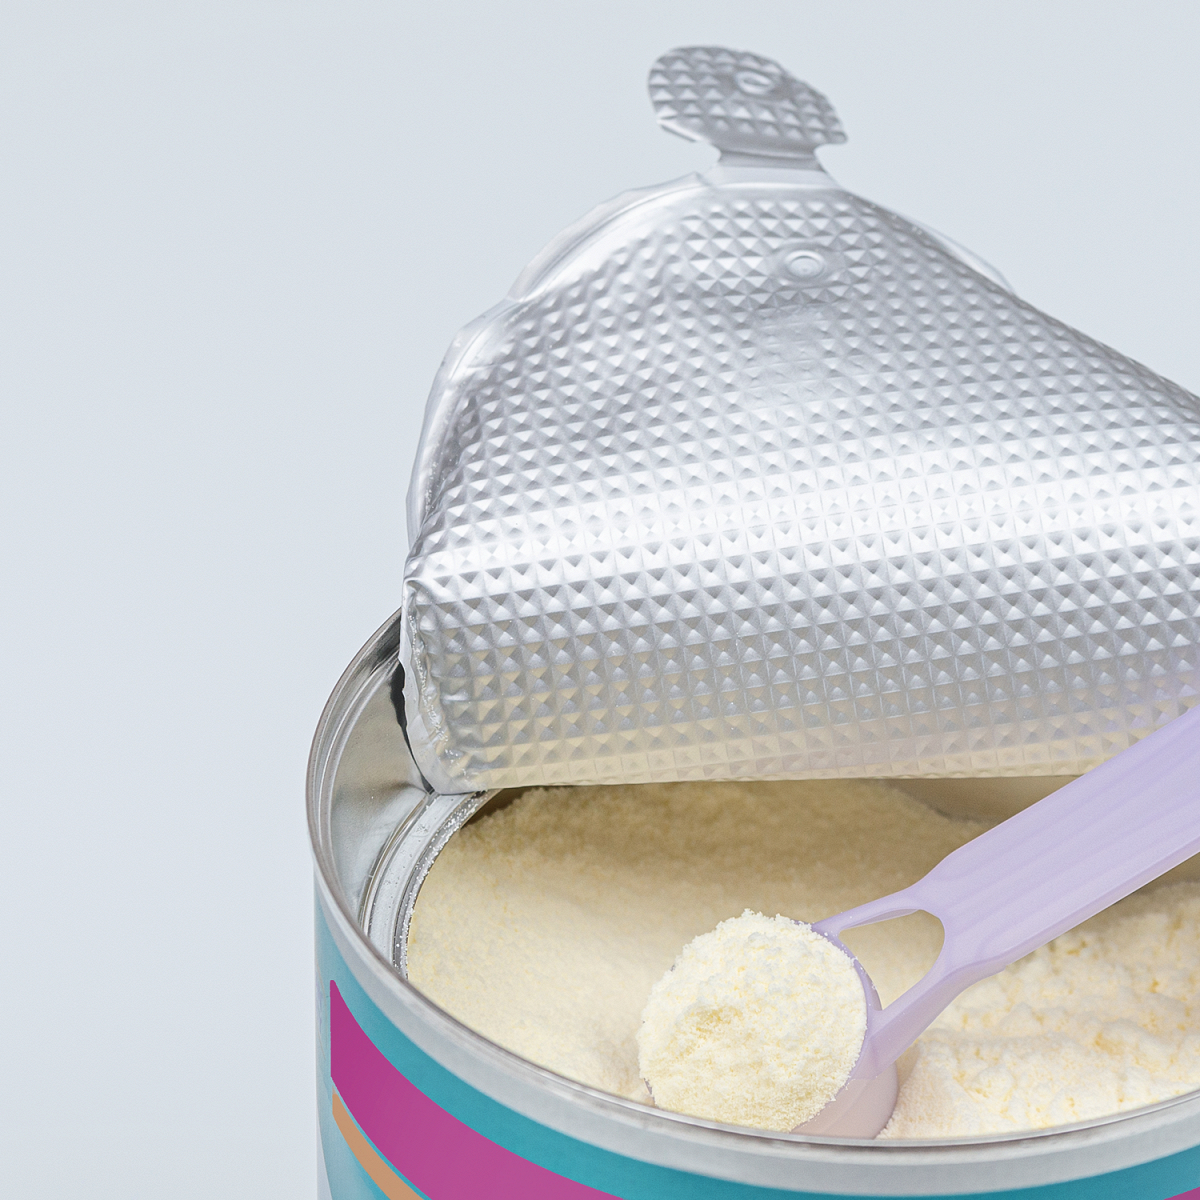 Молочная смесь под защитой: зачем продавцы ставят магнитные пищалки на детское питание